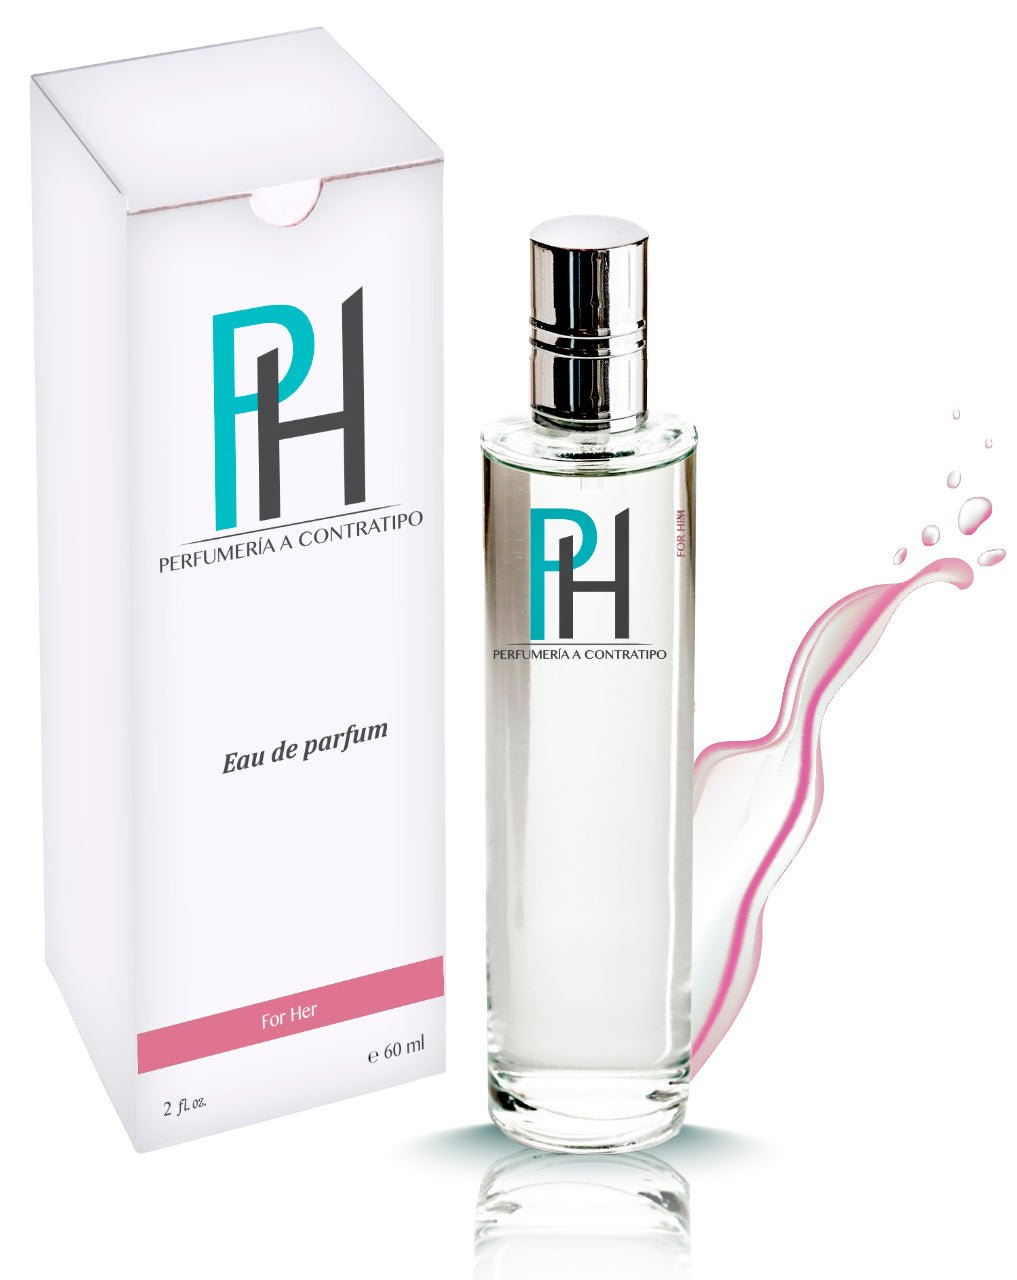 Perfume Agua de Sol de 60 ml - PH Perfumería a Contratipo